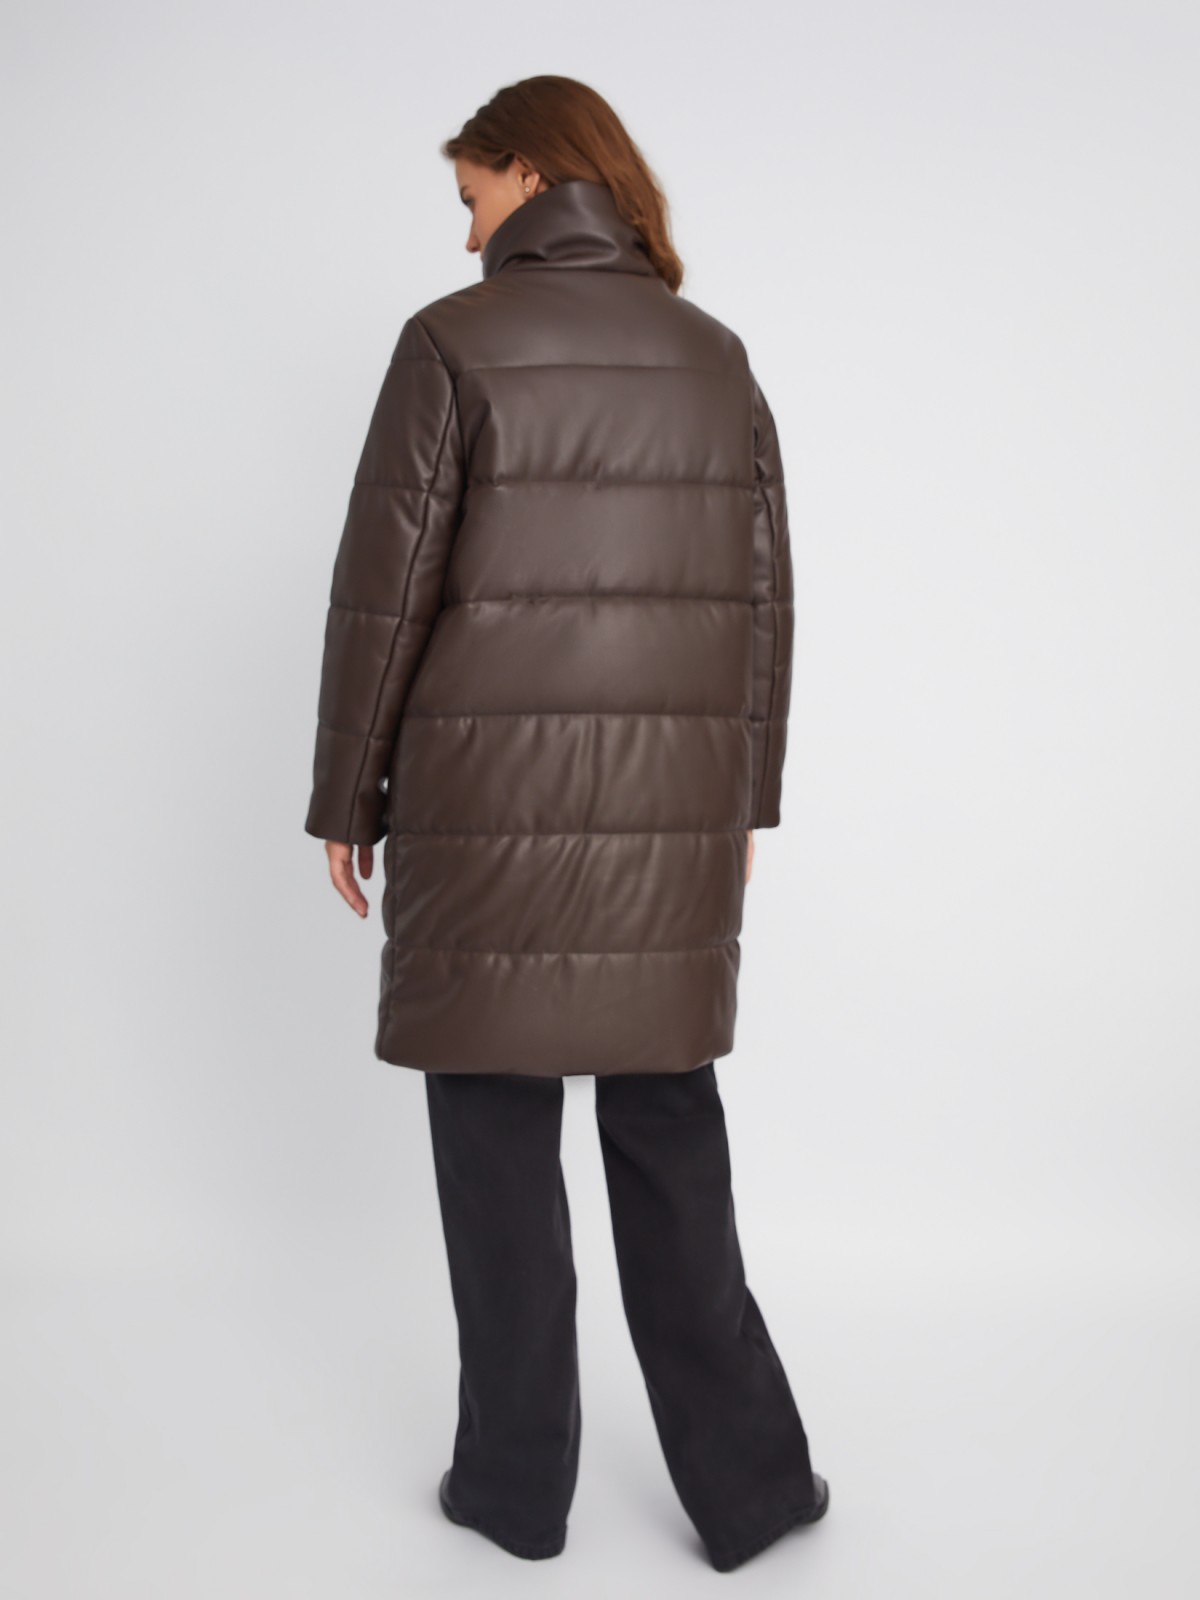 Тёплая стёганая куртка-пальто из экокожи с высоким воротником zolla 023345202054, цвет коричневый, размер XS - фото 6